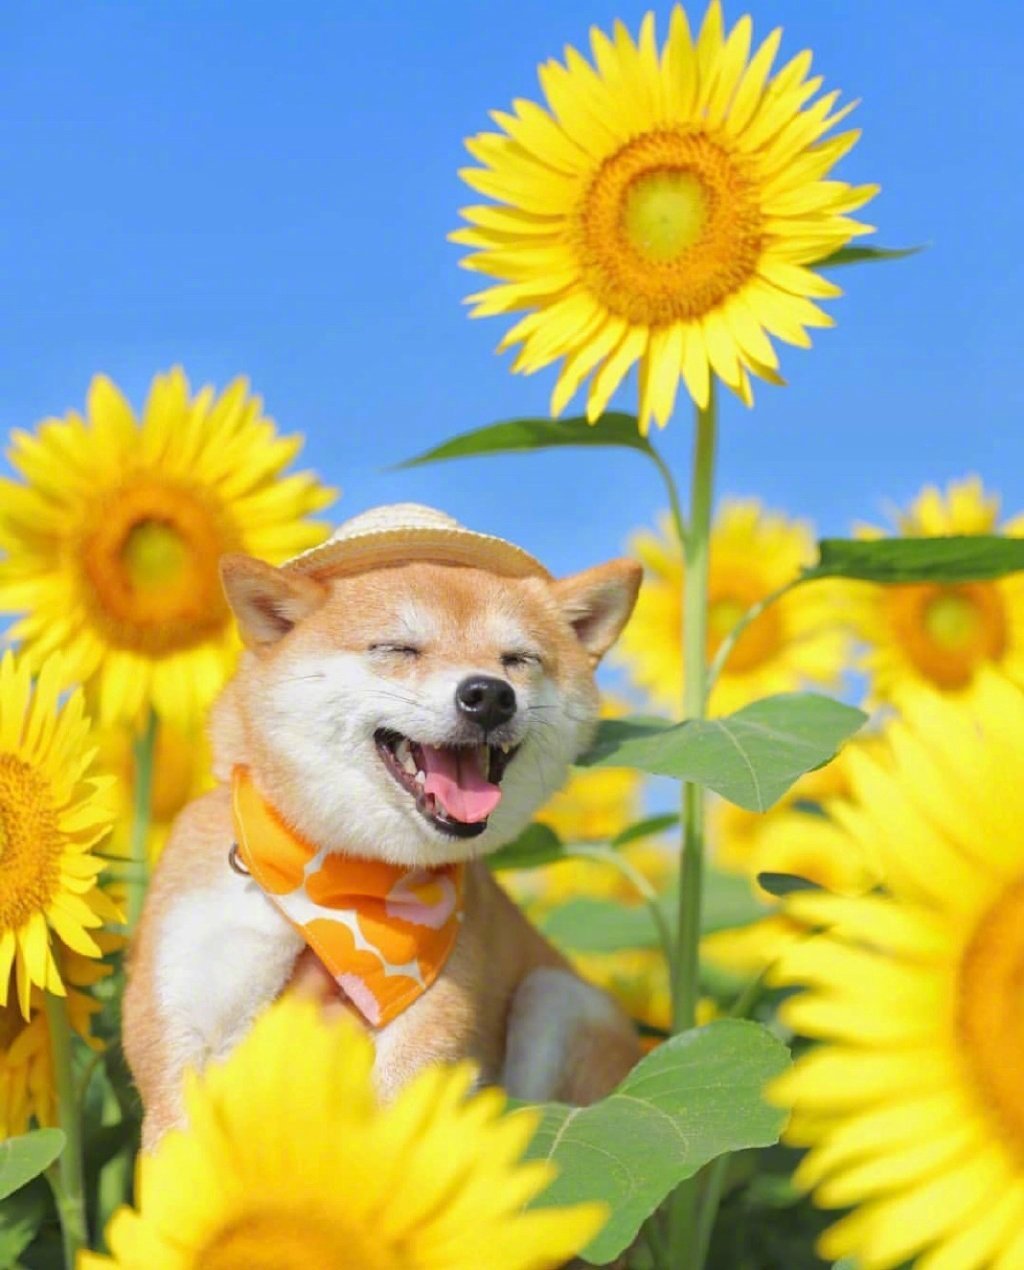 敲可爱卡哇伊治愈系的微笑狗狗向日葵图片 - 知乎